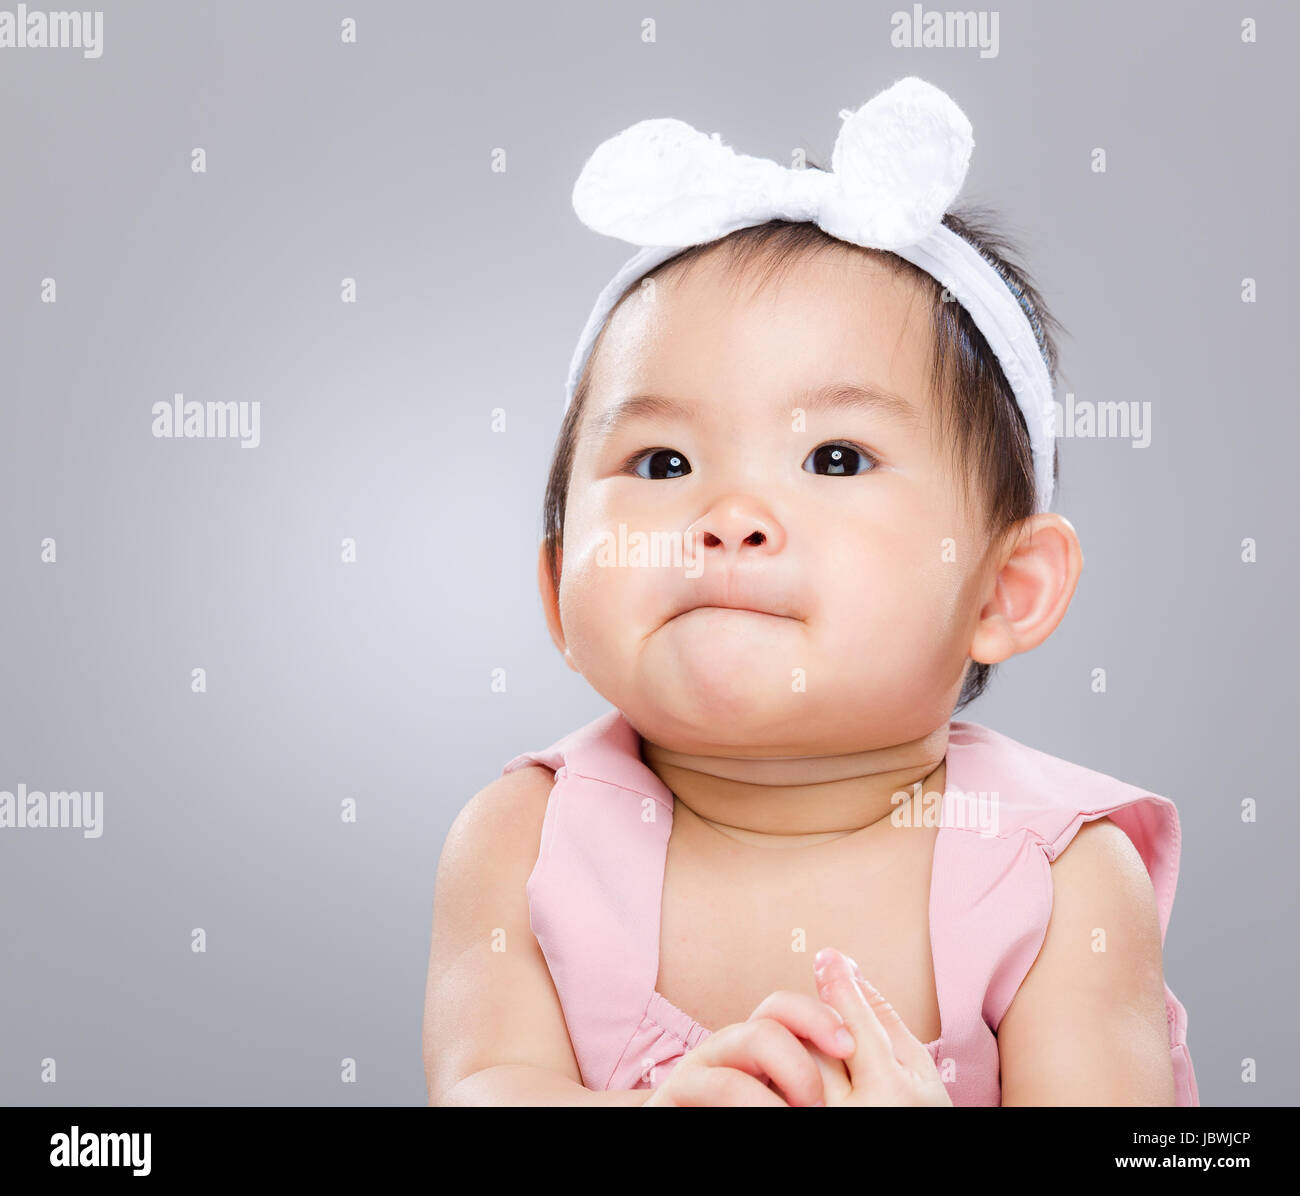 Asian baby portrait Stock Photo - Alamy